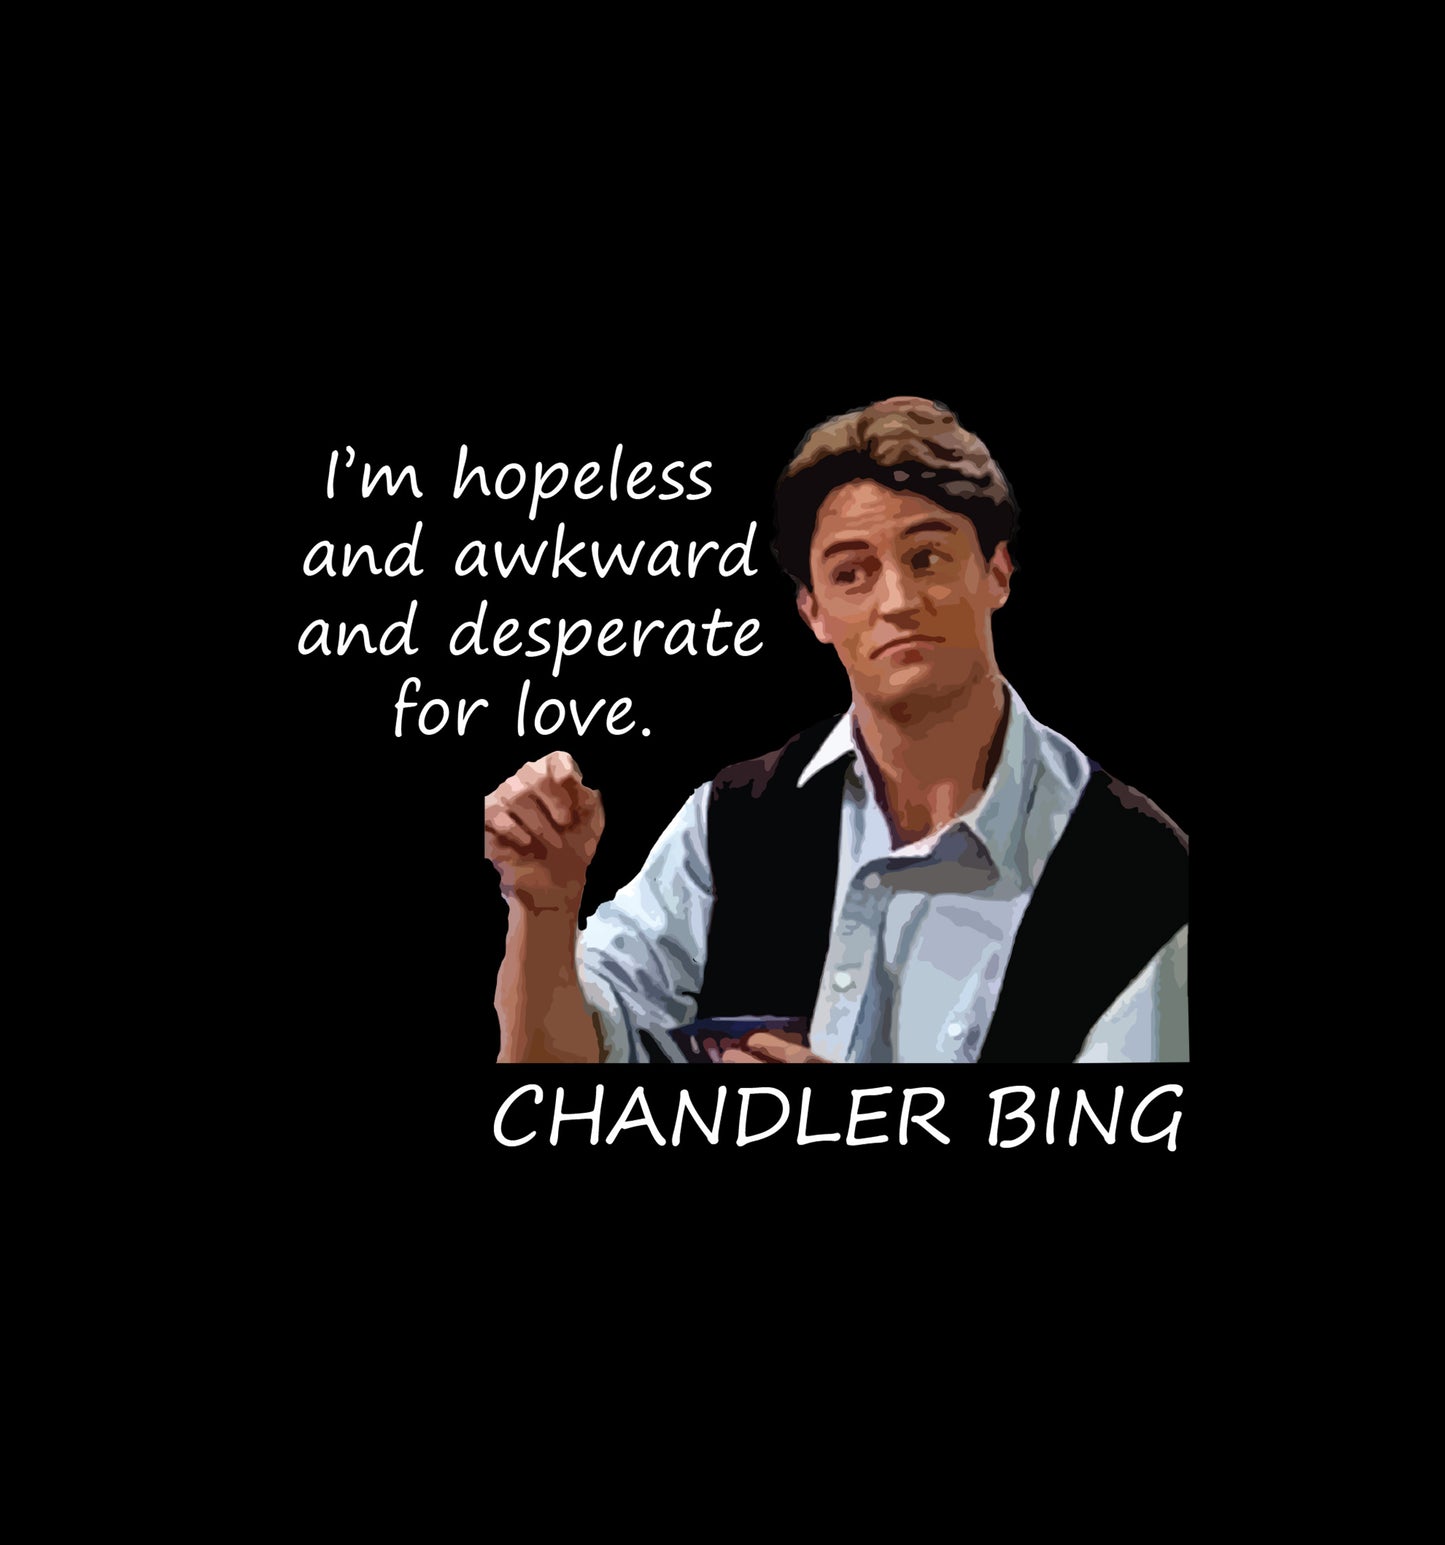 Friends - Chandler Tribute - Desperate For Love Sweatshirt In Black - Mon Zurich Originals